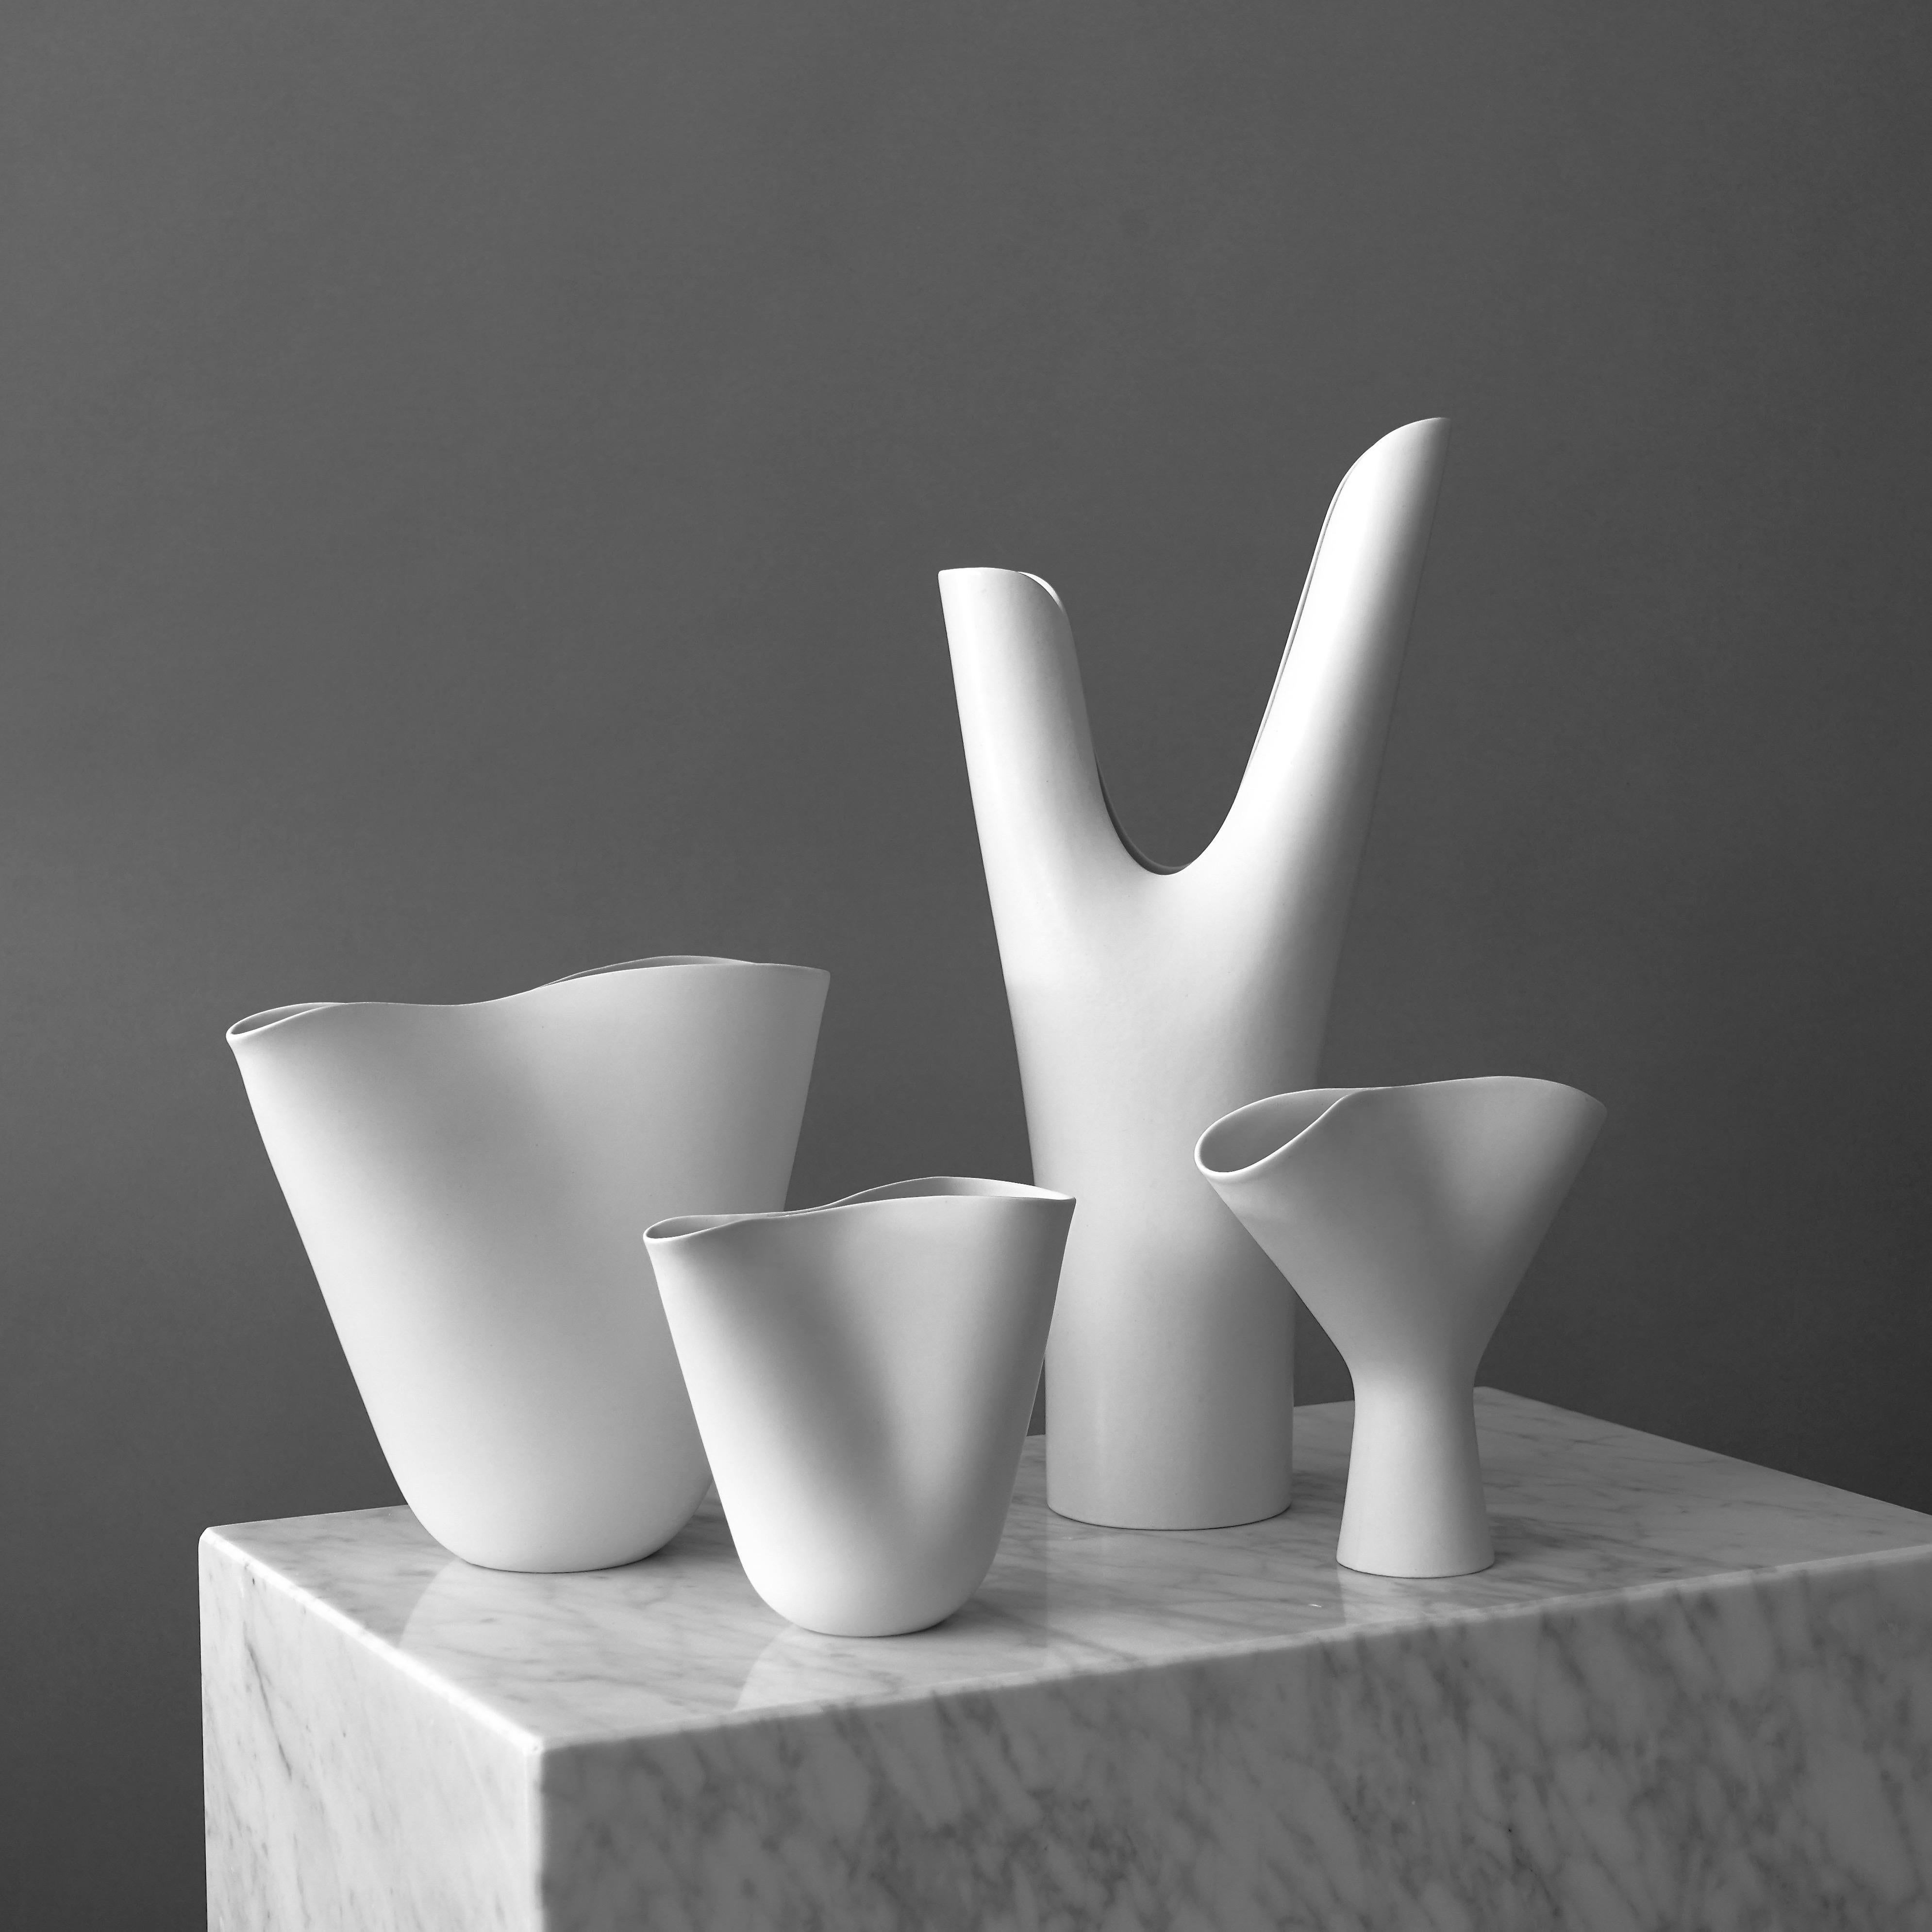 Ein Satz von 4 schönen 'Veckla'-Vasen.
Hergestellt von Stig Lindberg im Gustavsberg Studio, Schweden, 1950er Jahre.

Ausgezeichneter Zustand.
Geprägte Gustavsberg-Studio-Hand.
Die größte Vase ist 36 cm hoch (14,2 Zoll).

Die Vasen 